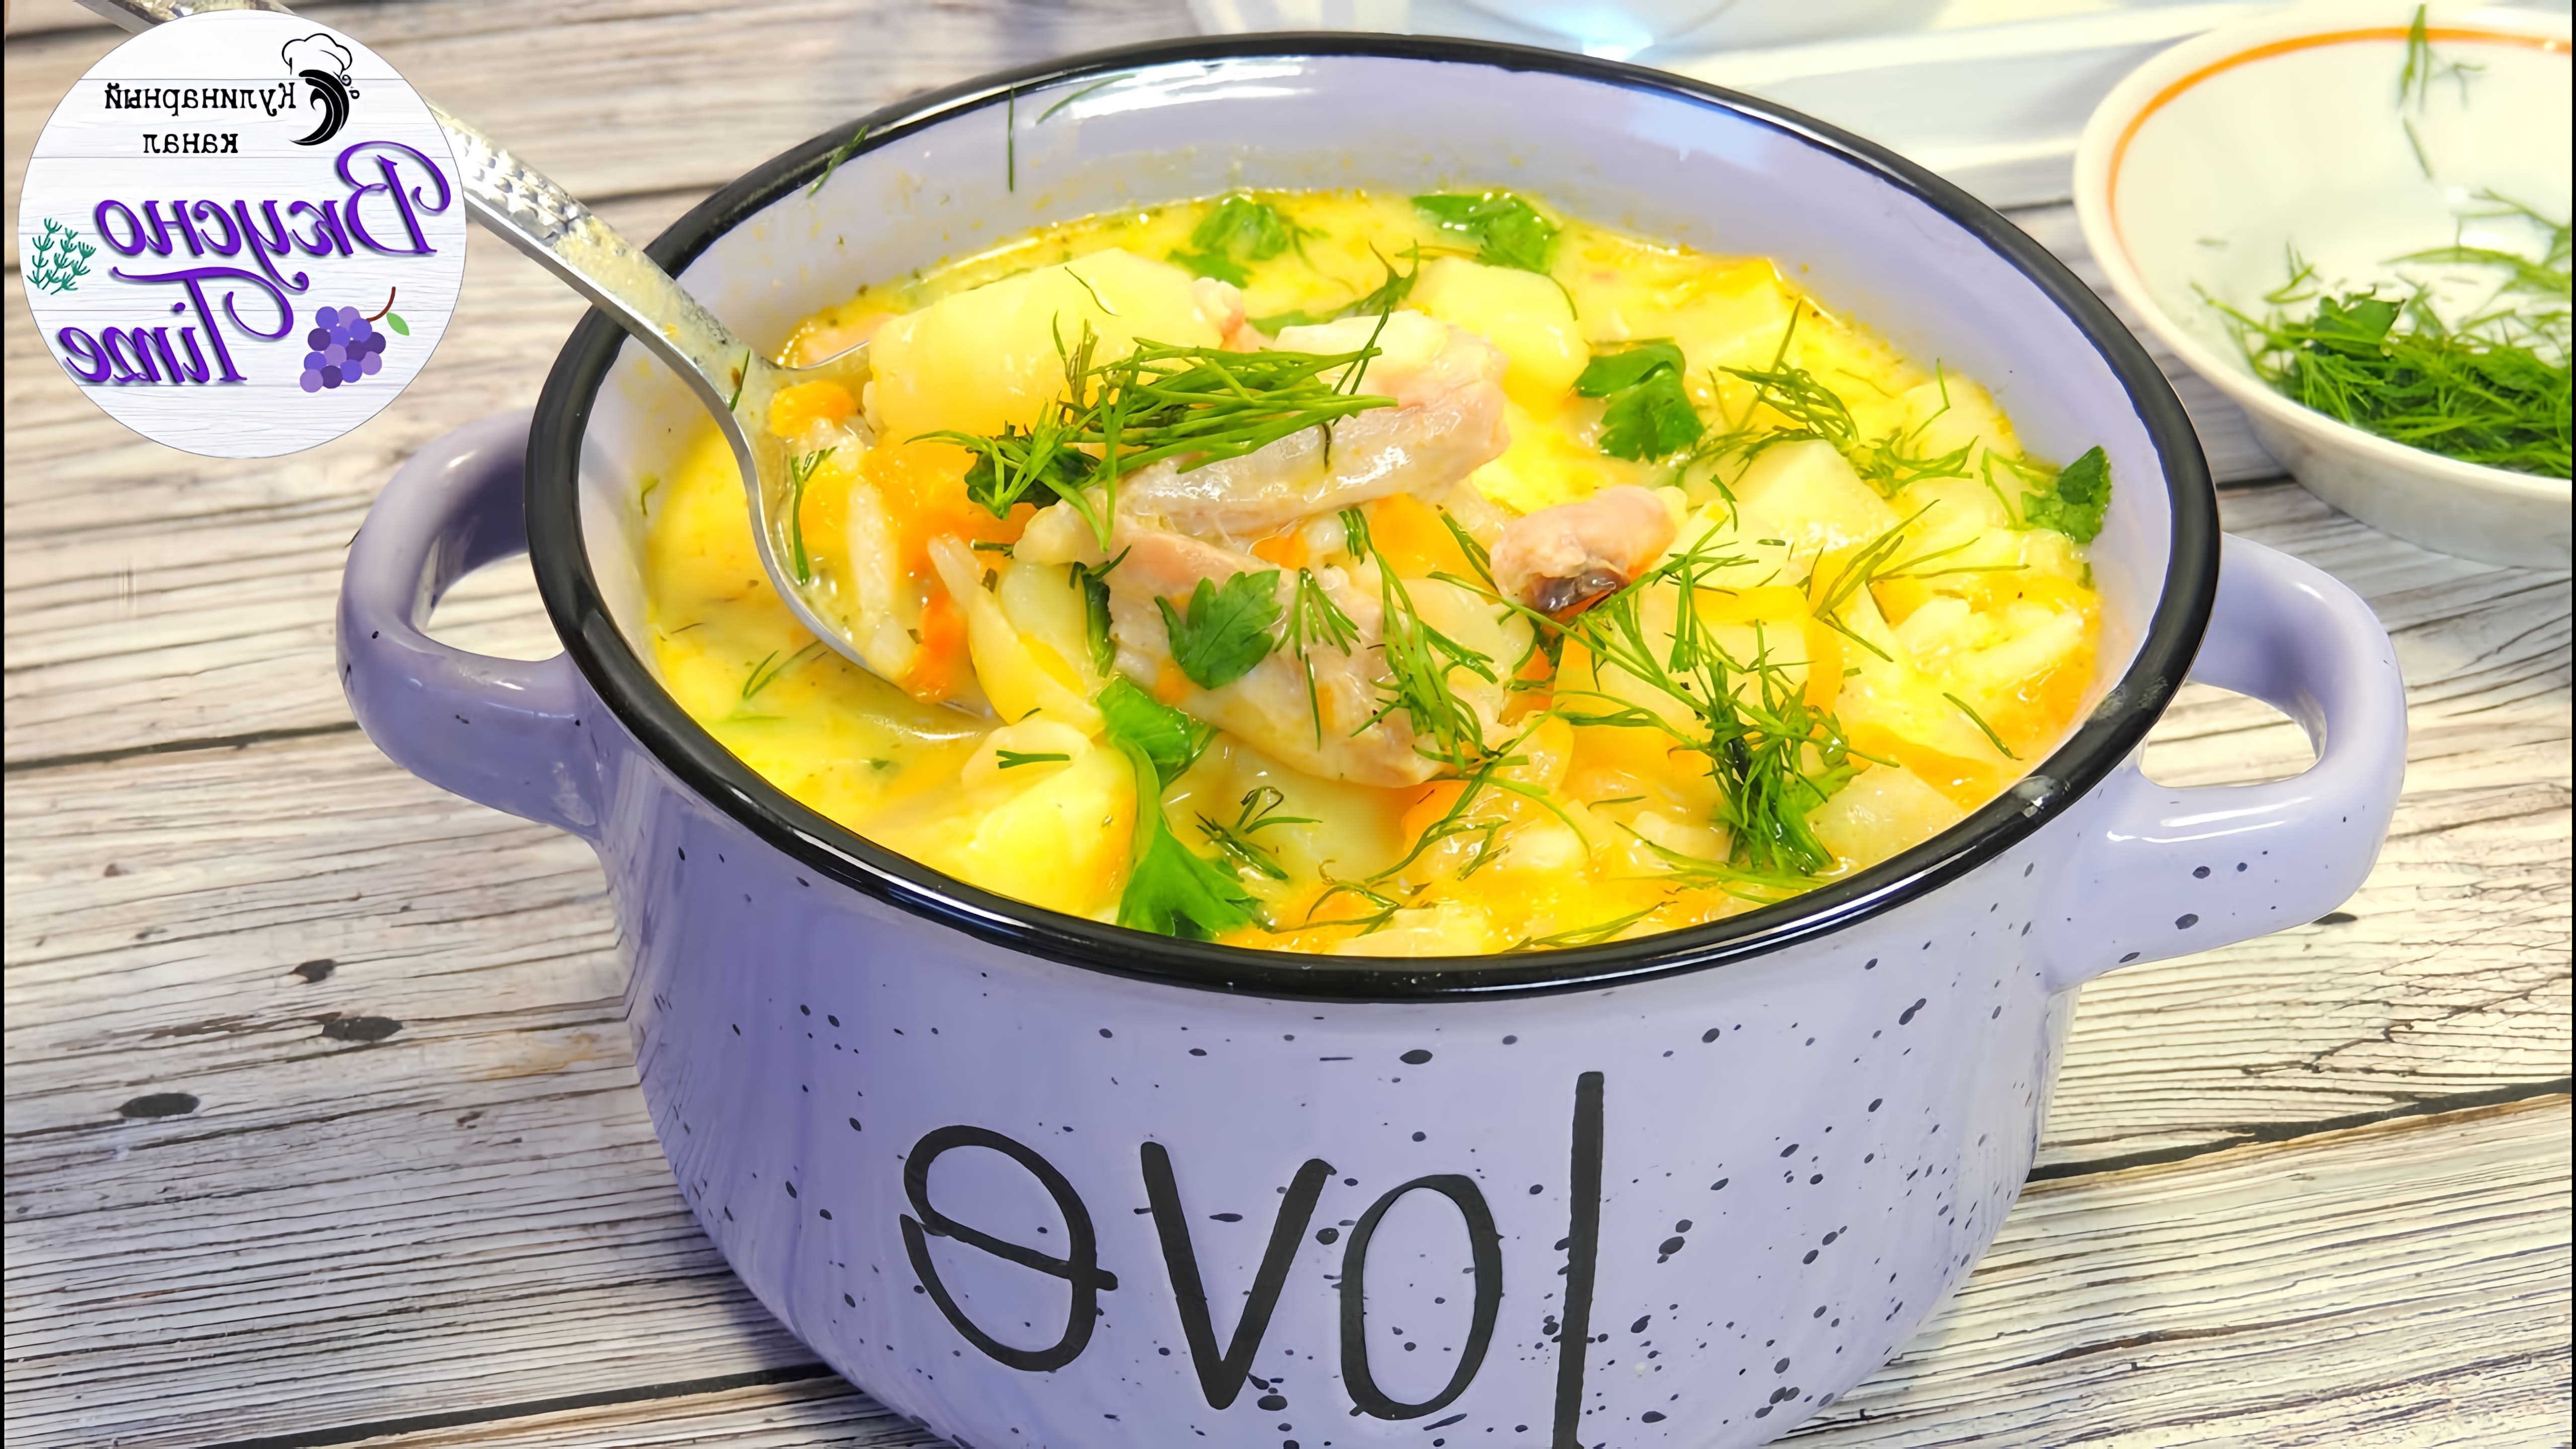 Видео рецепт сырного супа с курицей, который является любимым блюдом детей создателя